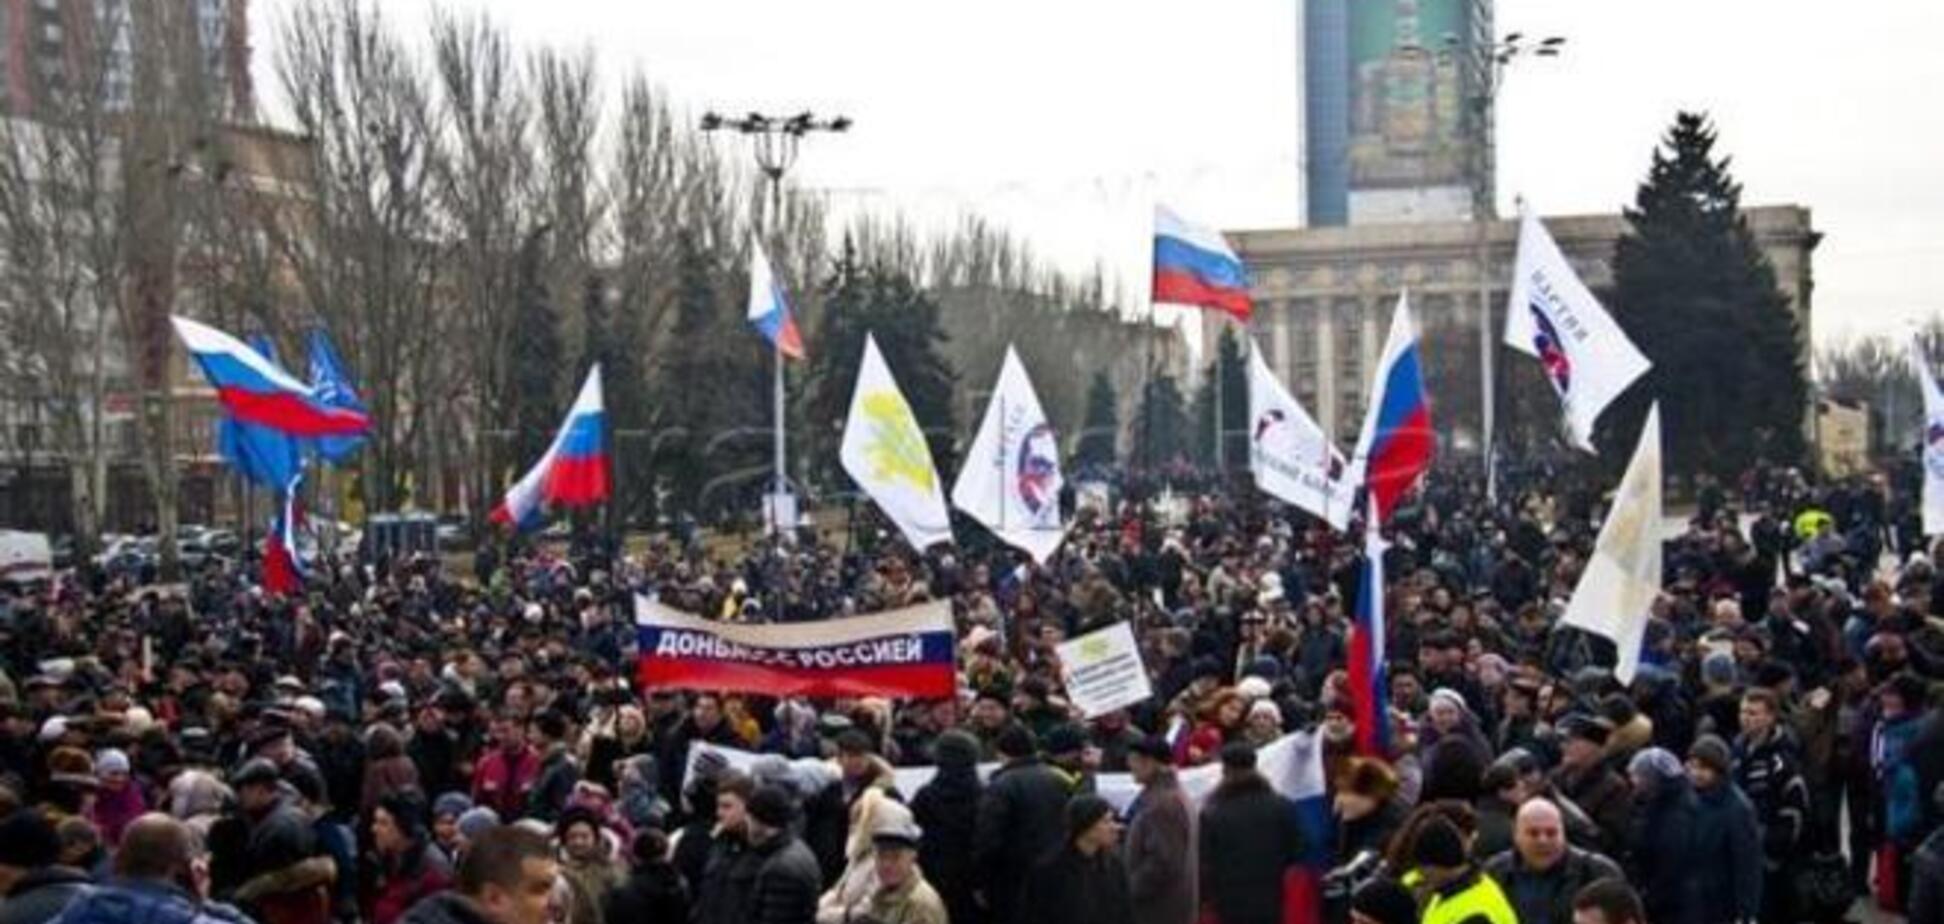 ЗМІ повідомили про падіння рівня підтримки сепаратизму на Донбасі